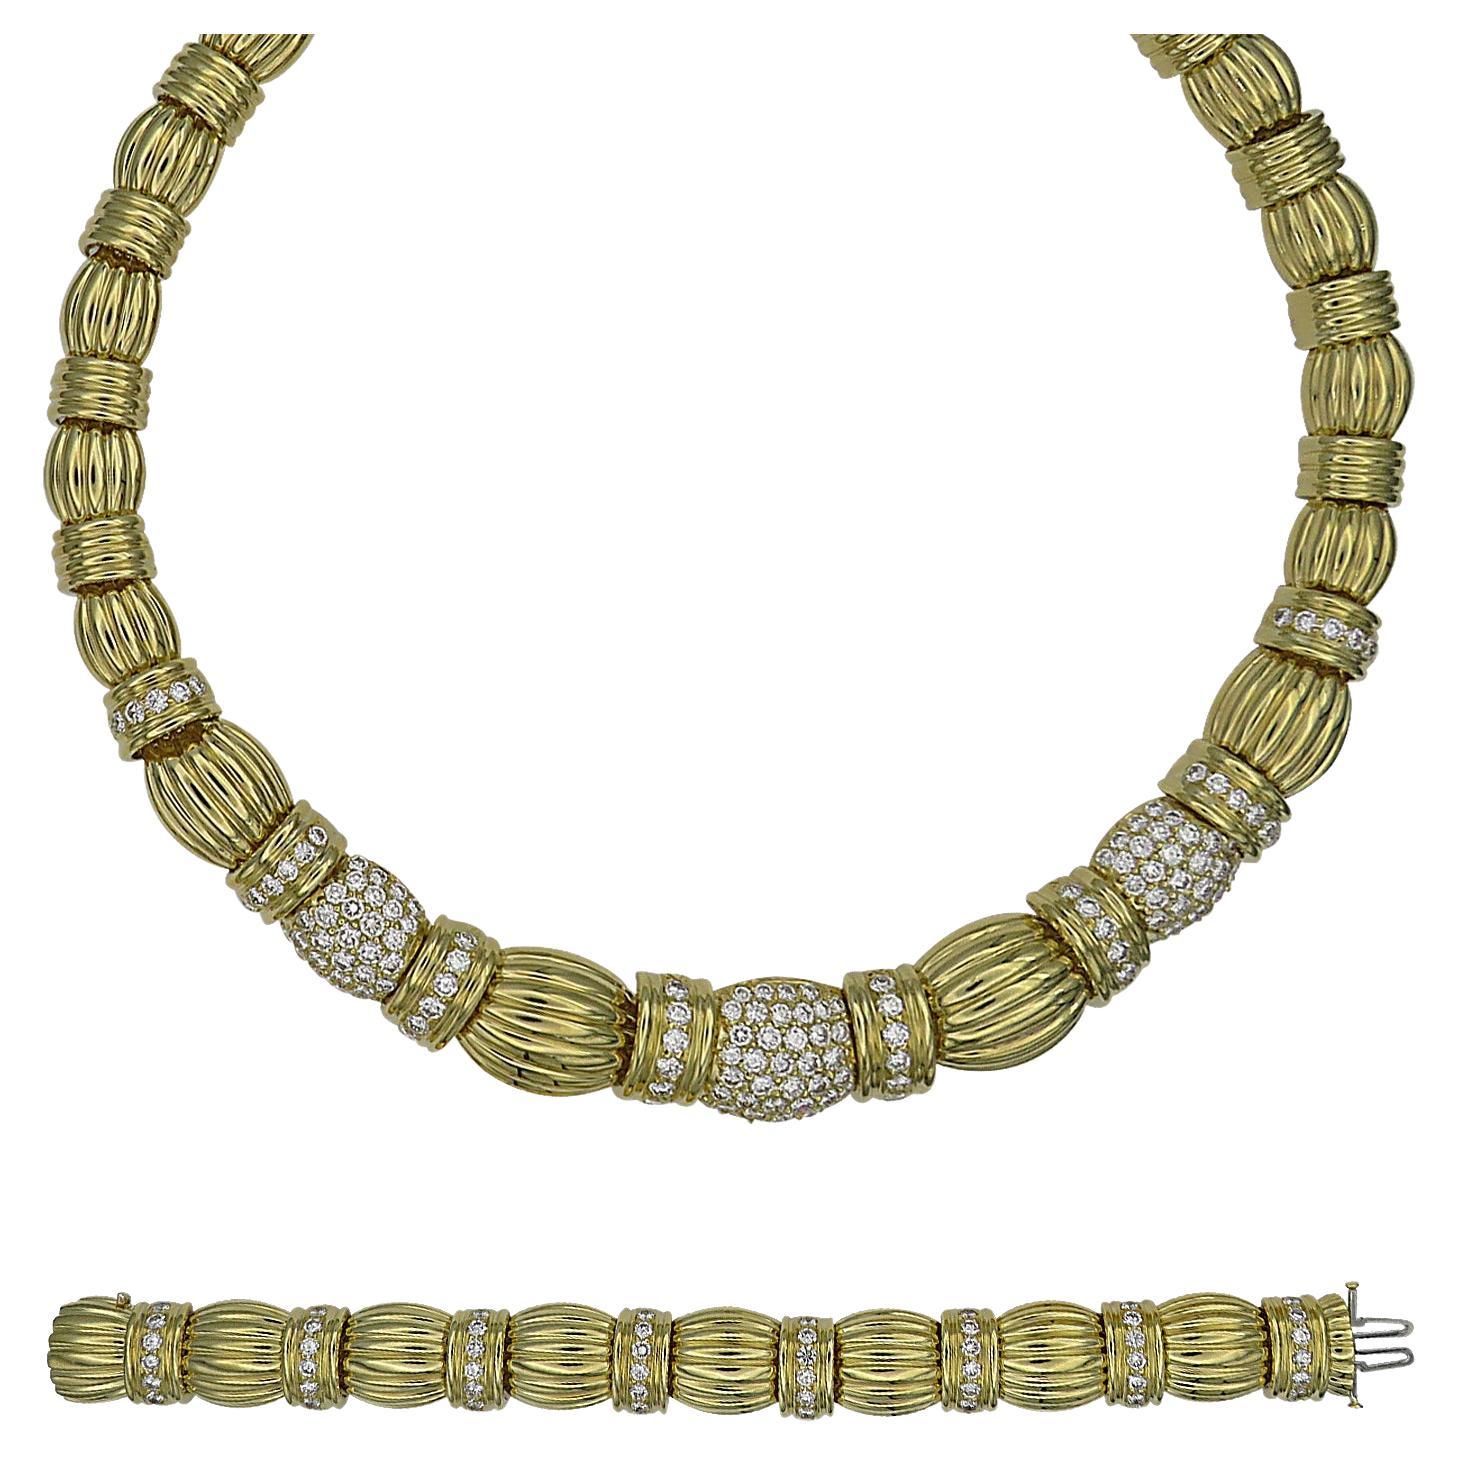 19.85 Carat Diamond Necklace and Bracelet Set